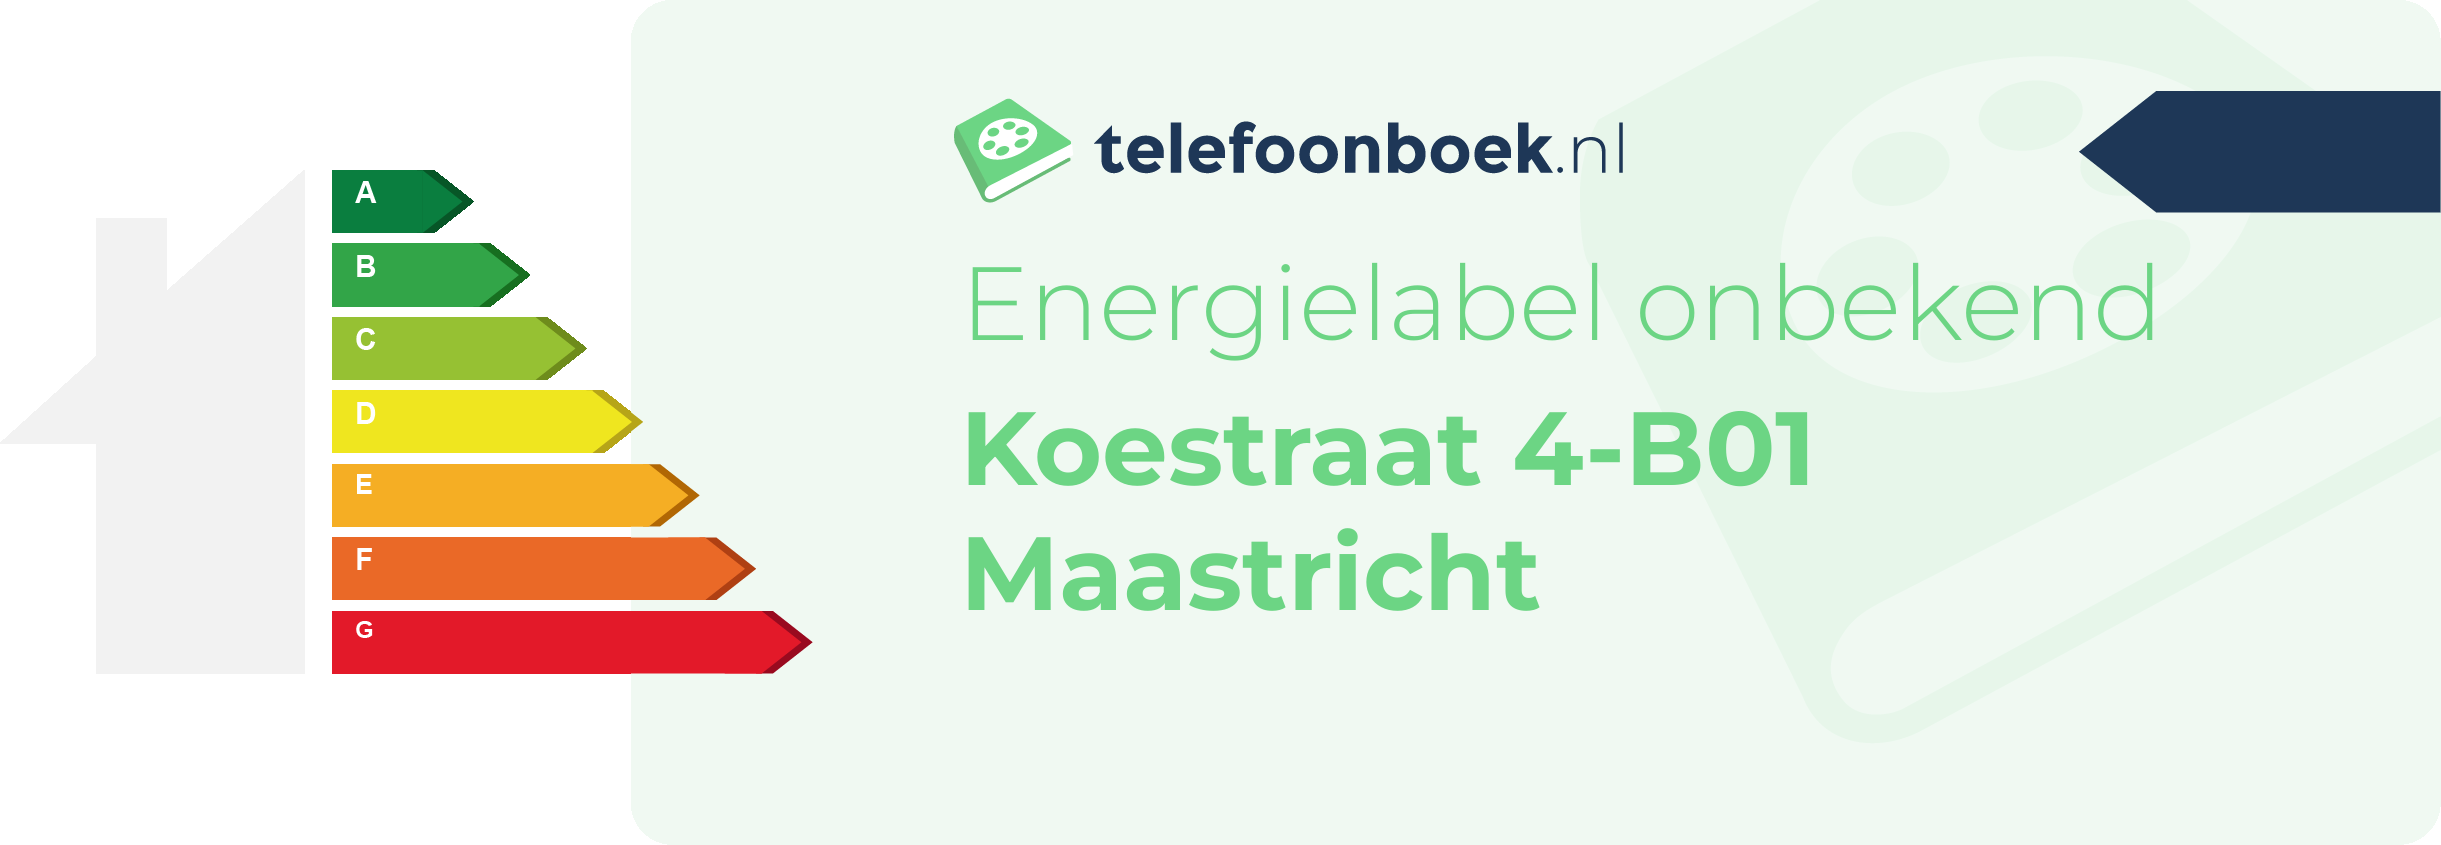 Energielabel Koestraat 4-B01 Maastricht